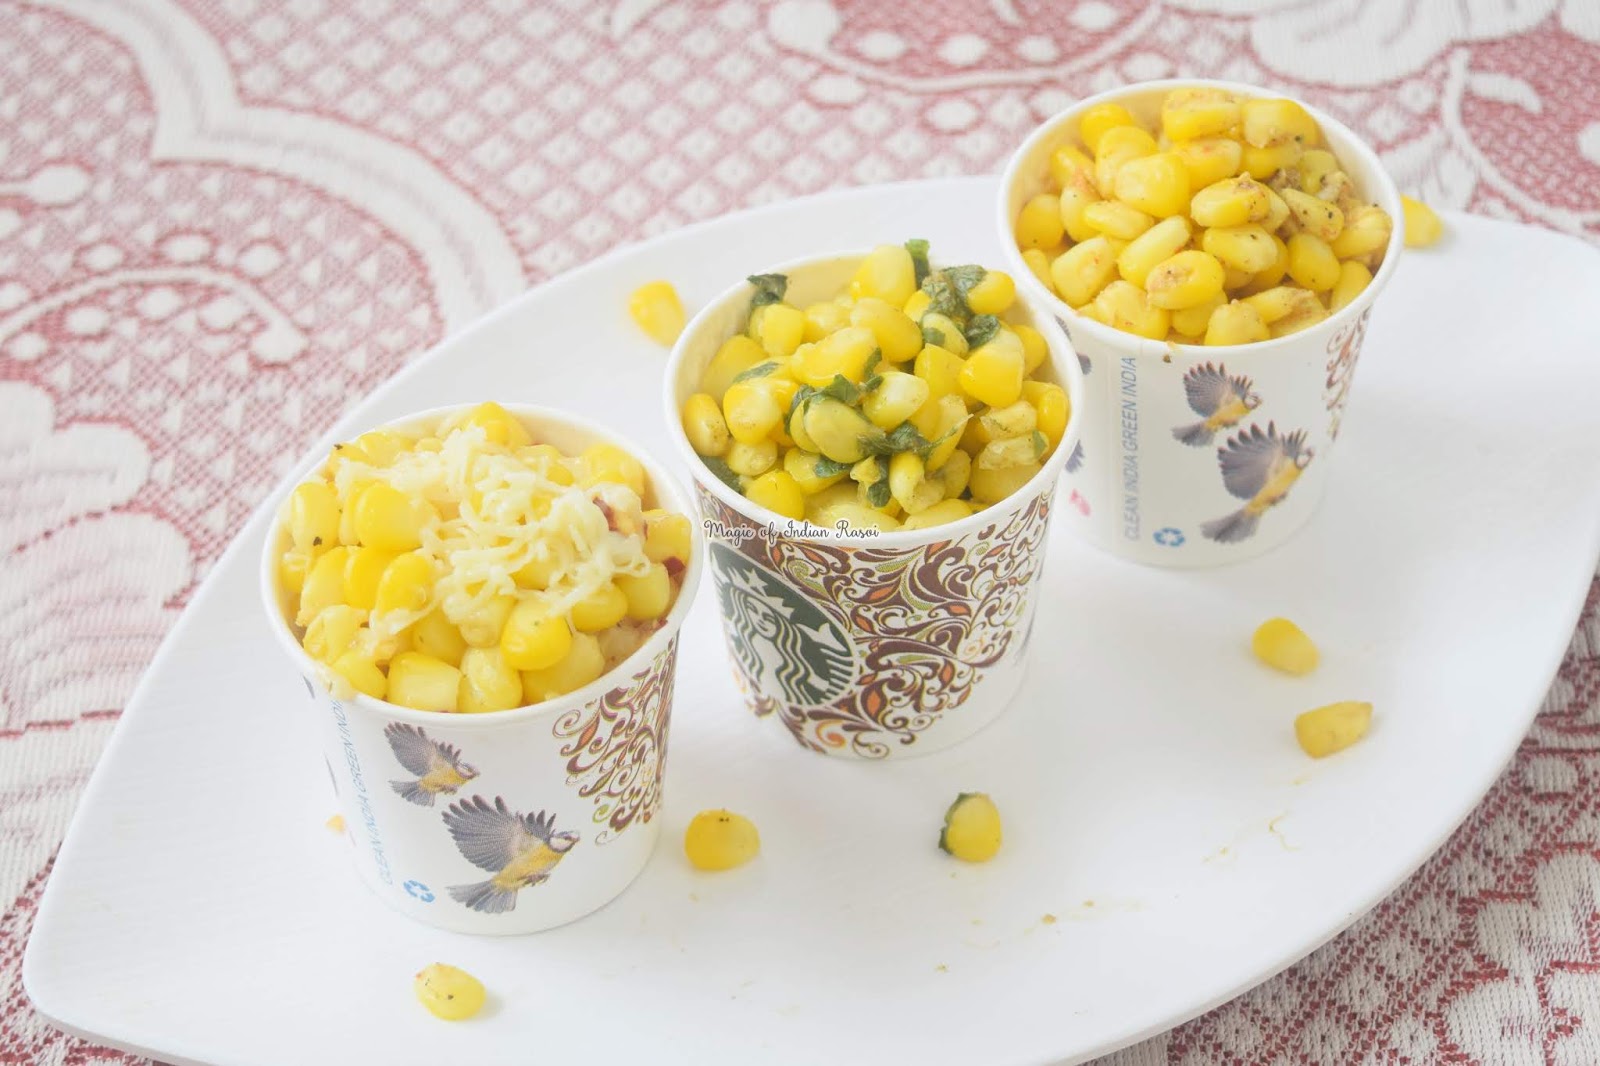 Corn in Cup - 3 flavours - Butter Masala, Minty Pani Puri, Cheese & Herbs - बटर कॉर्न, पानी पूरी कॉर्न और चीज़ हर्ब्स कॉर्न रेसिपी - Priya R Sweet - Magic of Indian Rasoi